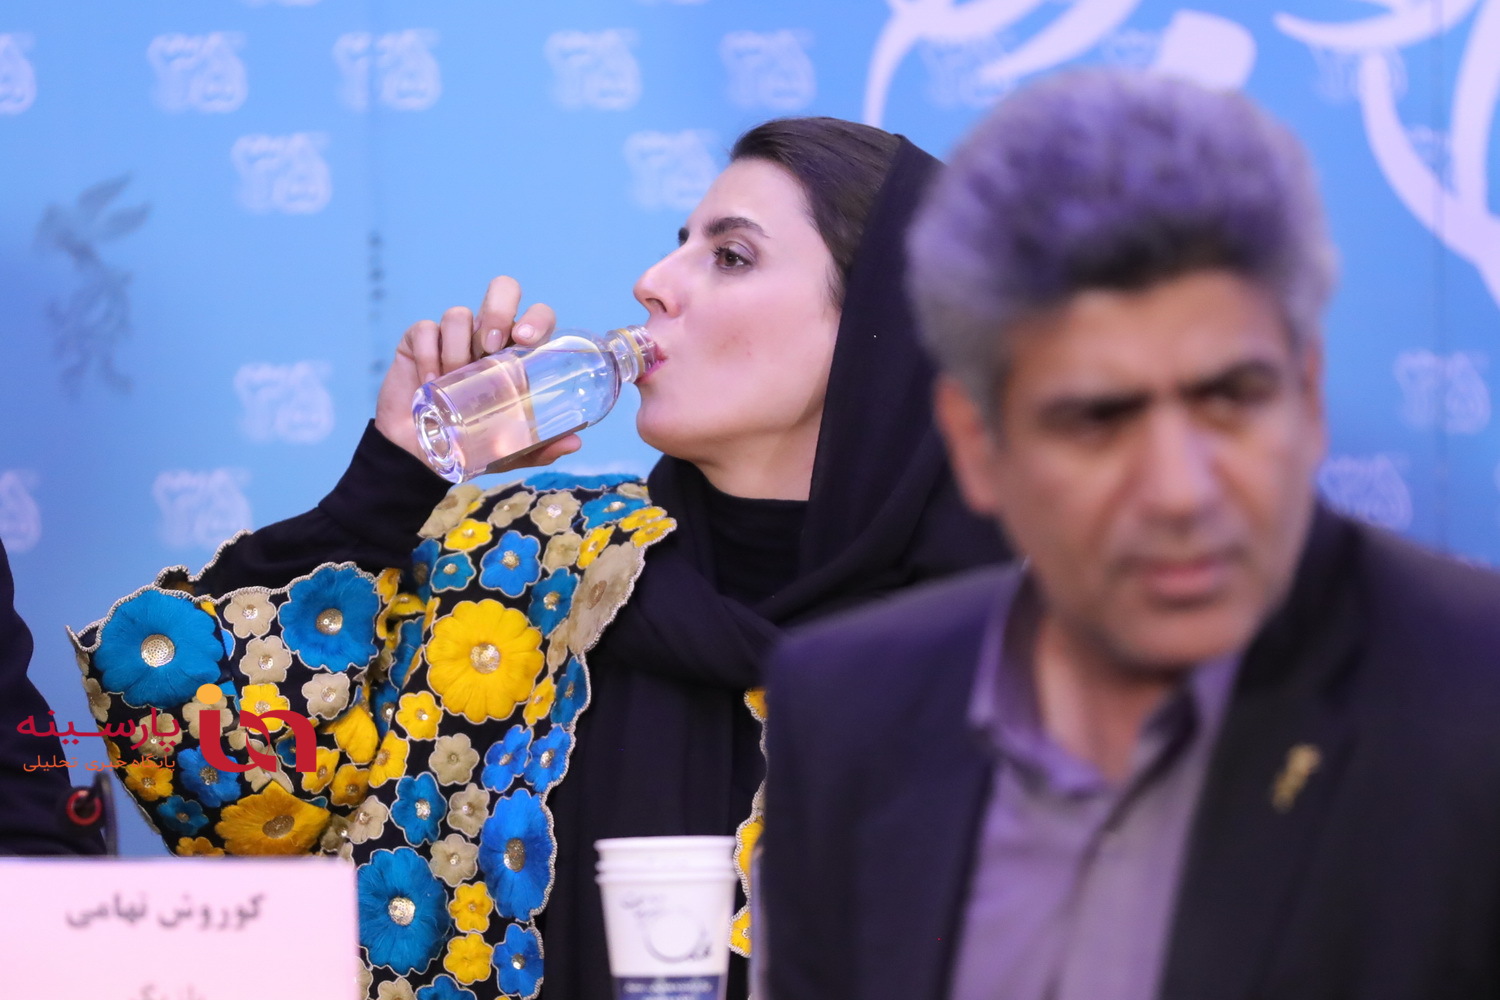 متن و حواشی فیلم های روز هشتم کاخ جشنواره در قاب تصویر